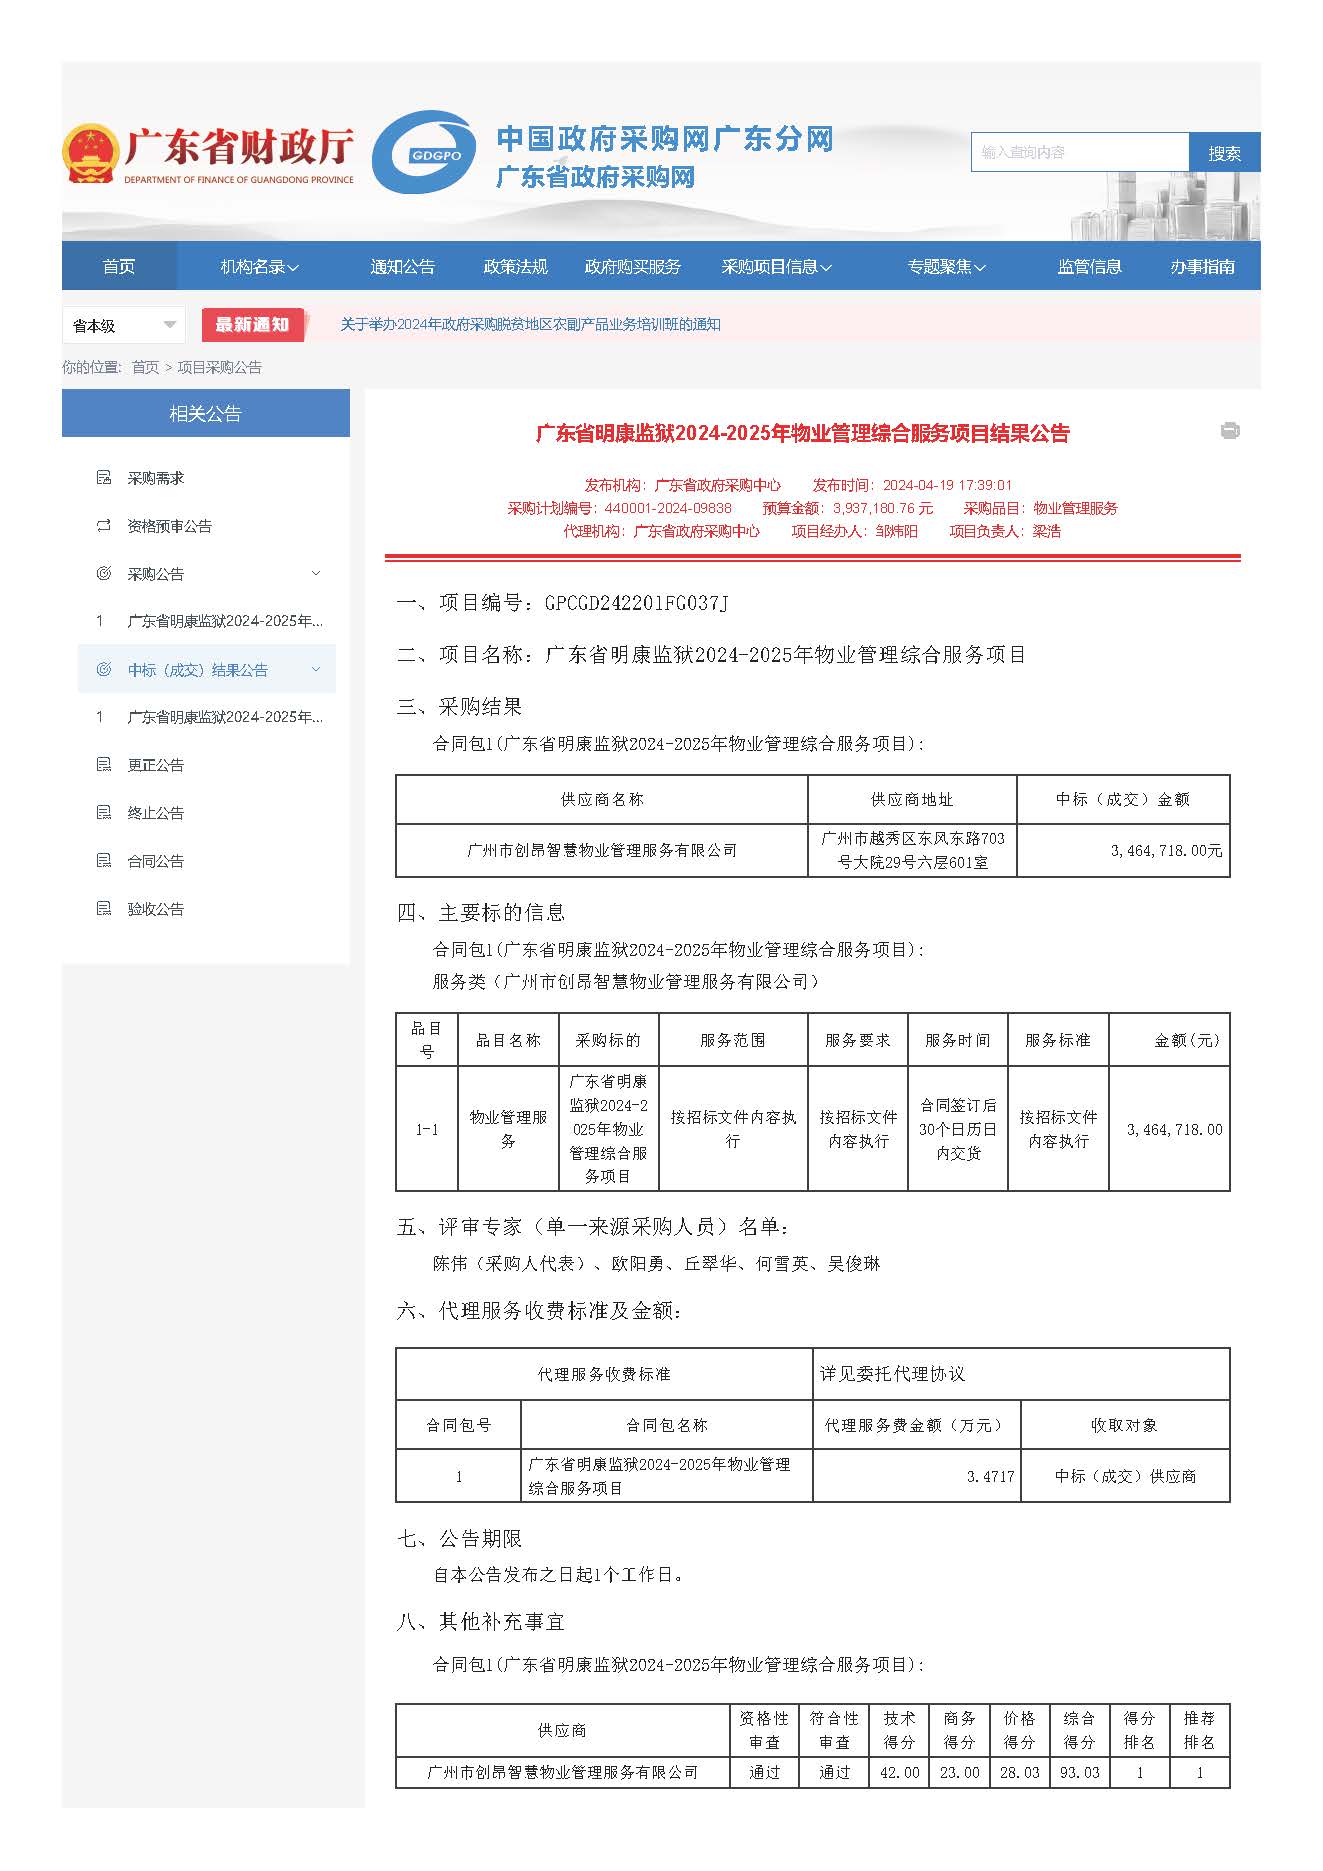 41.63广东省明康监狱2024-2025年物业管理综合服务项目结果公告_页面_1.jpg